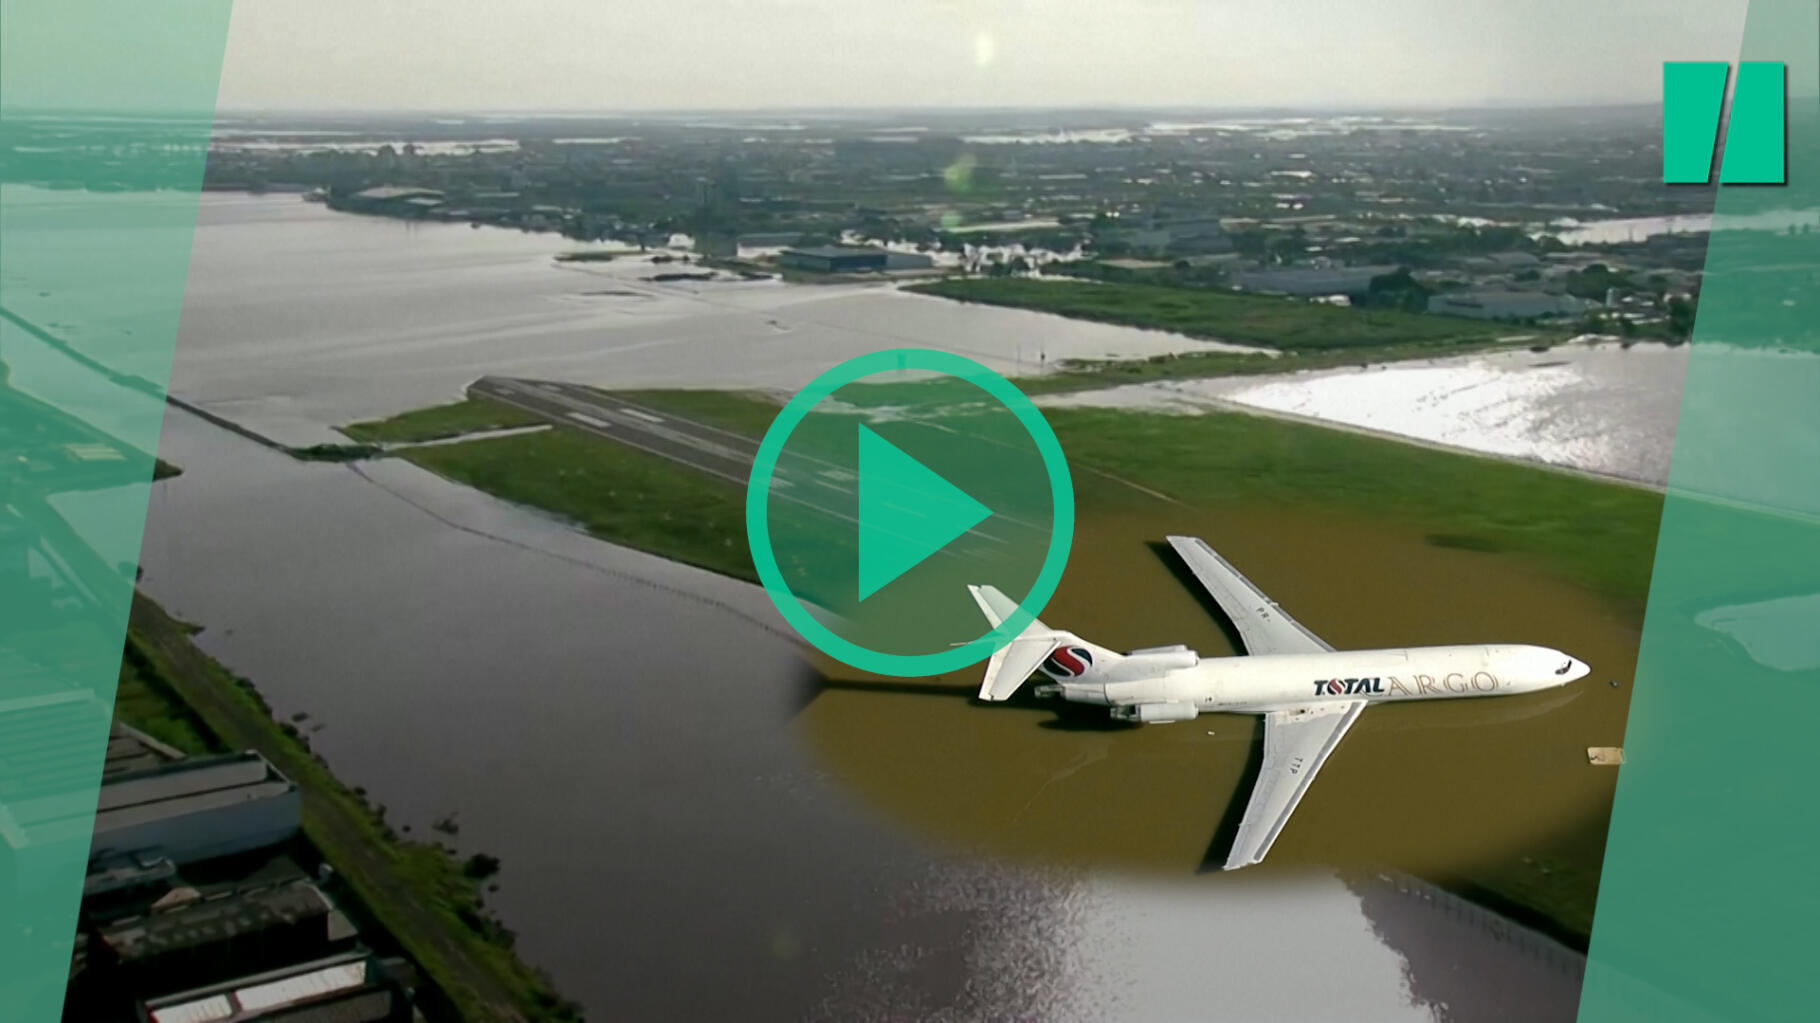   Après des inondations monstres au Brésil, l’aéroport de Porto Alegre submergé par les eaux  